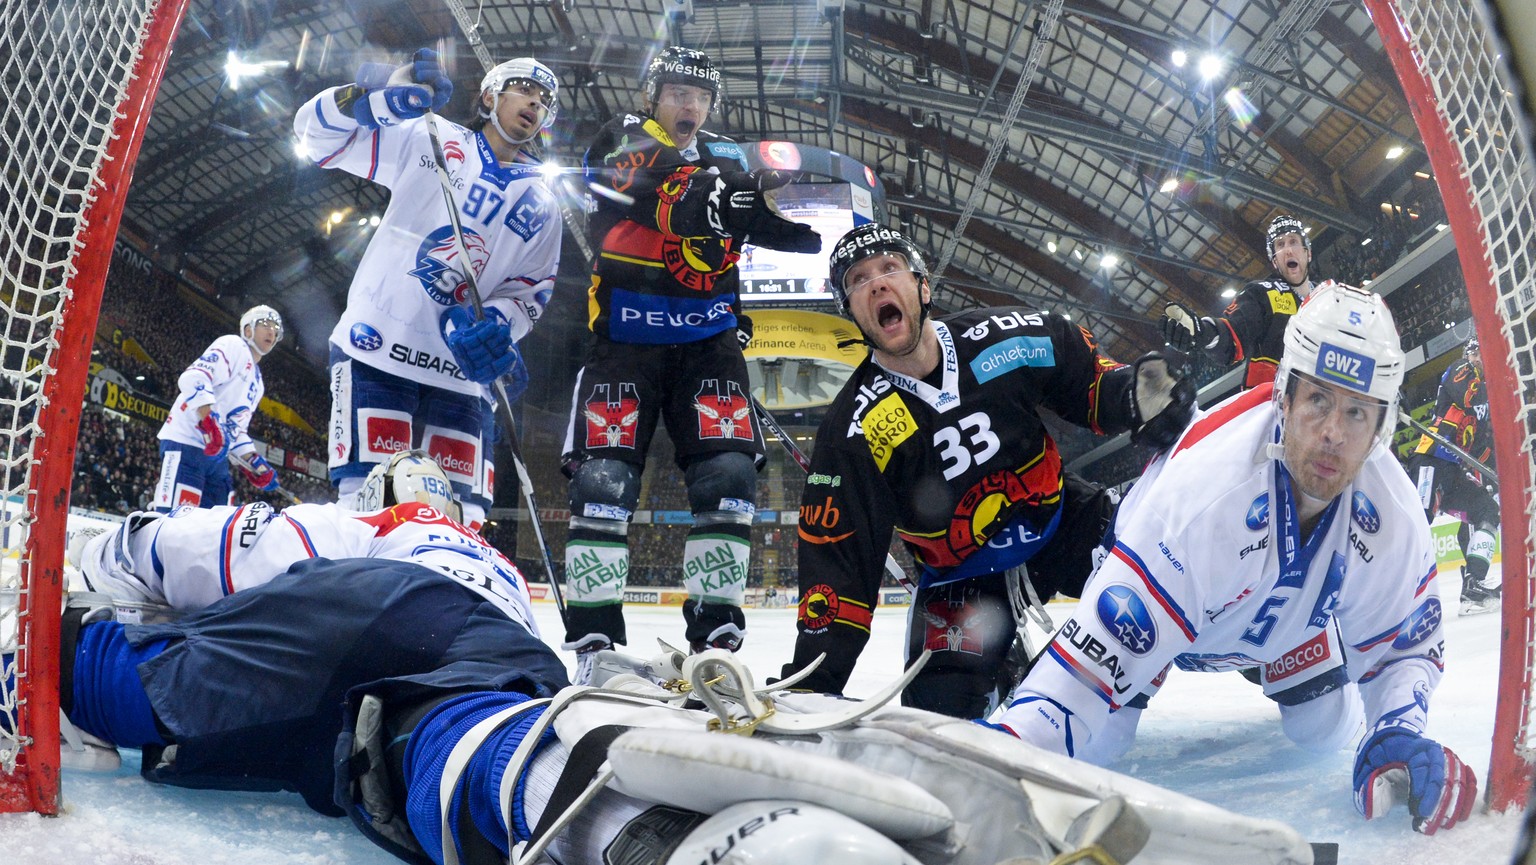 Wie ein vorweggenommener Final – im Playoff-Halbfinal duellieren sich die Titanen des Schweizer Hockeys.